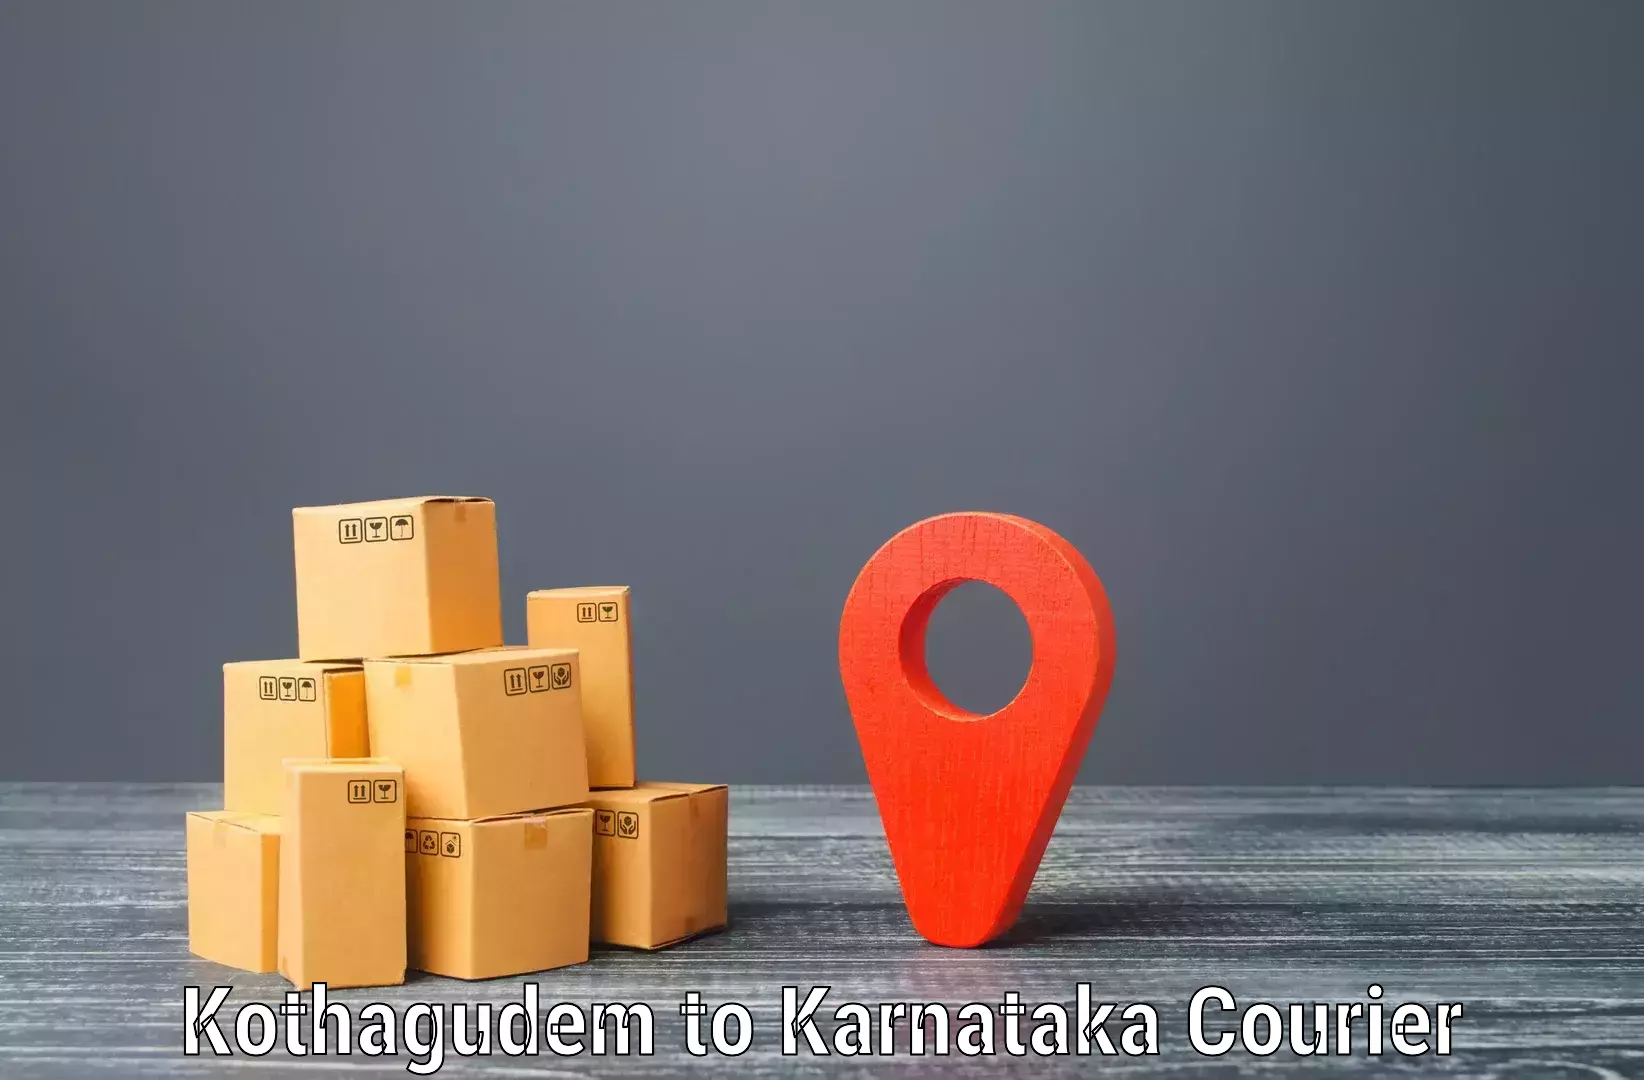 Smart shipping technology Kothagudem to Yenepoya Mangalore